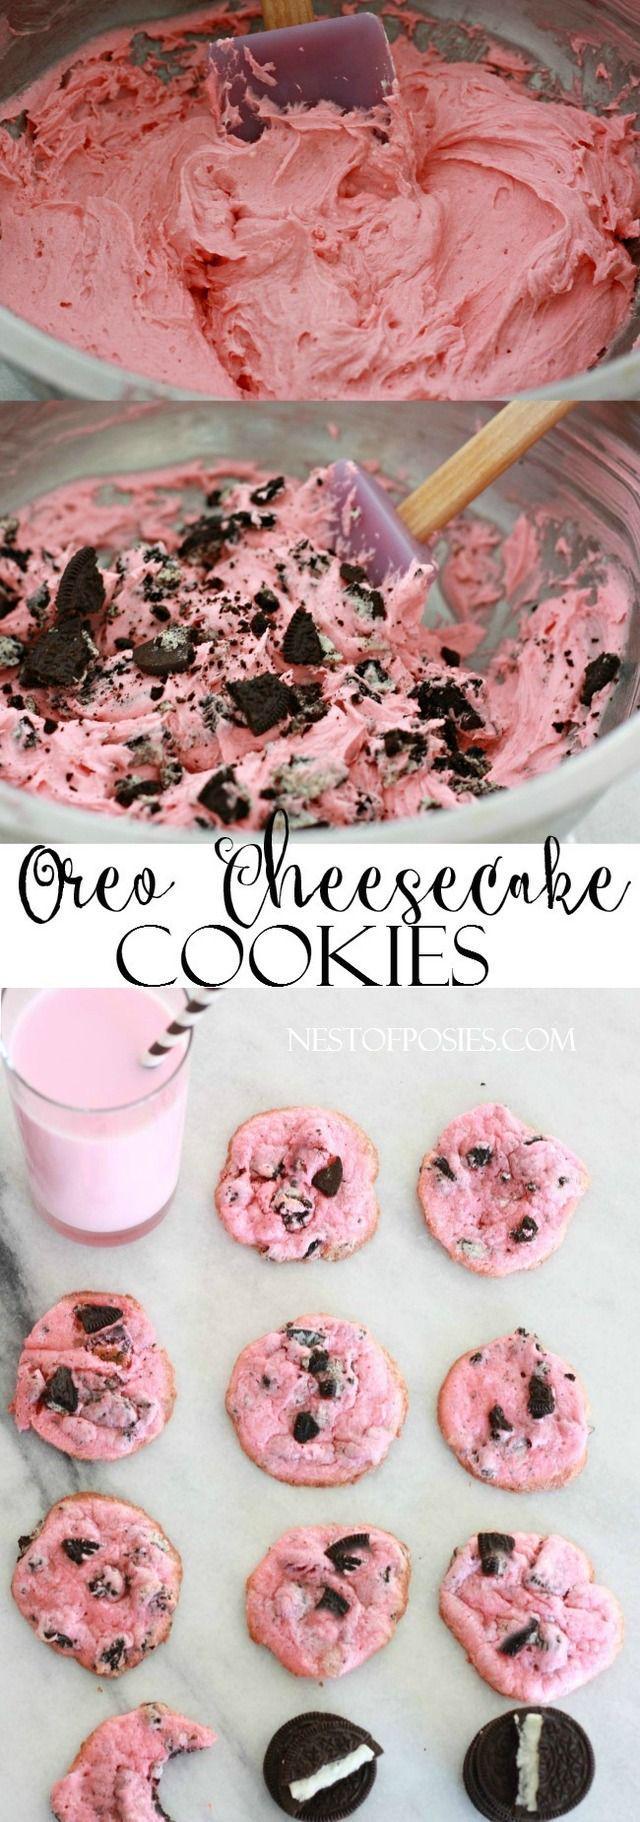 รูปภาพ:http://www.nestofposies-blog.com/wp-content/uploads/2015/01/Oreo-Cheesecake-Cookies.-So-easy-to-make-using-just-6-ingredients.jpg